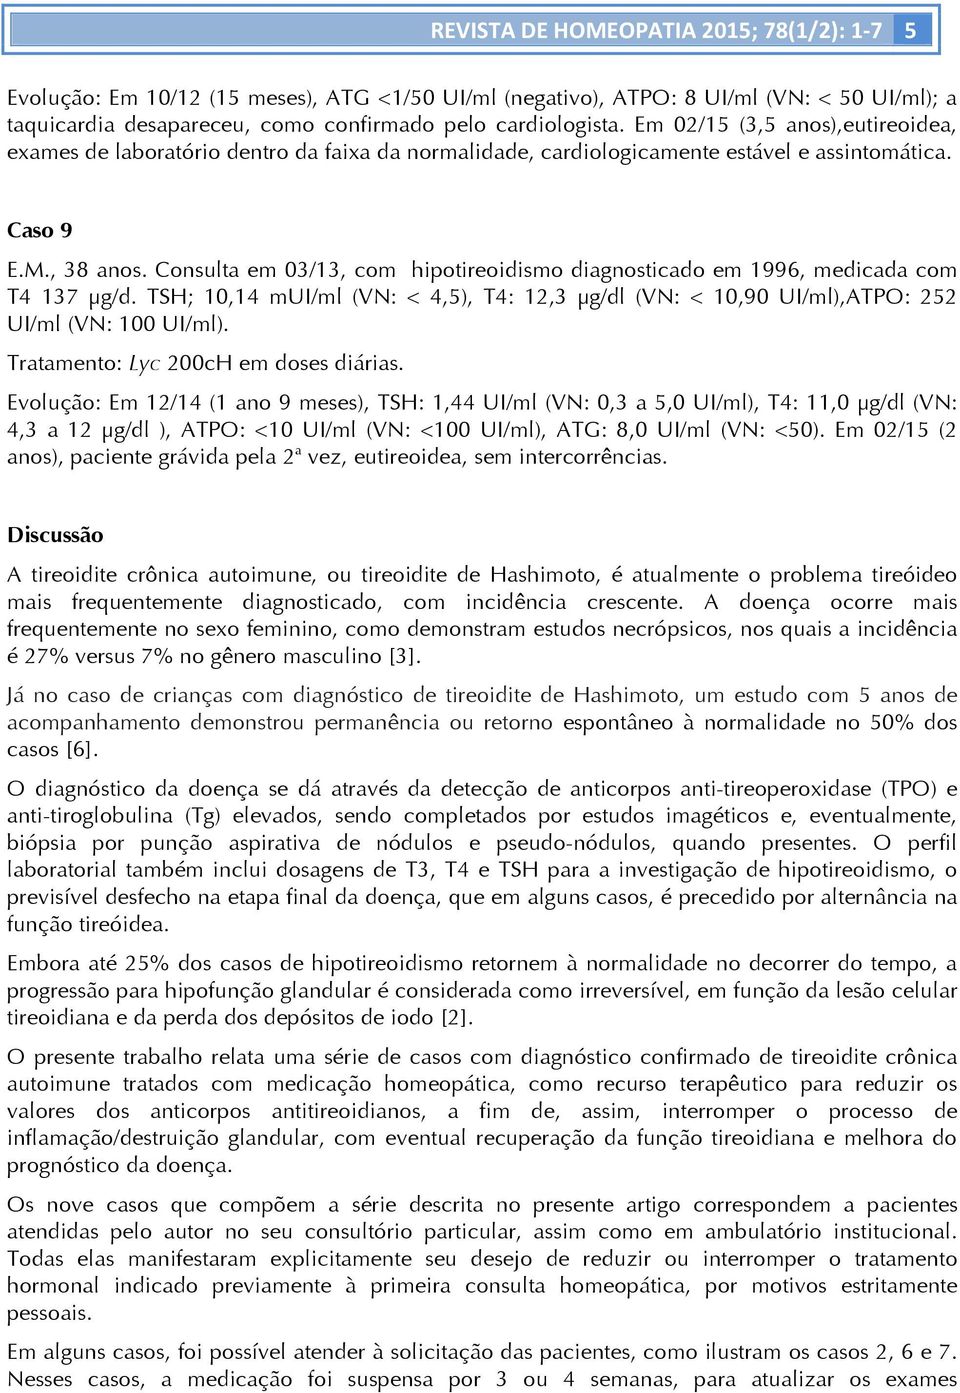 Consulta em 03/13, com hipotireoidismo diagnosticado em 1996, medicada com T4 137 µg/d. TSH; 10,14 mui/ml (VN: < 4,5), T4: 12,3 µg/dl (VN: < 10,90 UI/ml),ATPO: 252 UI/ml (VN: 100 UI/ml).